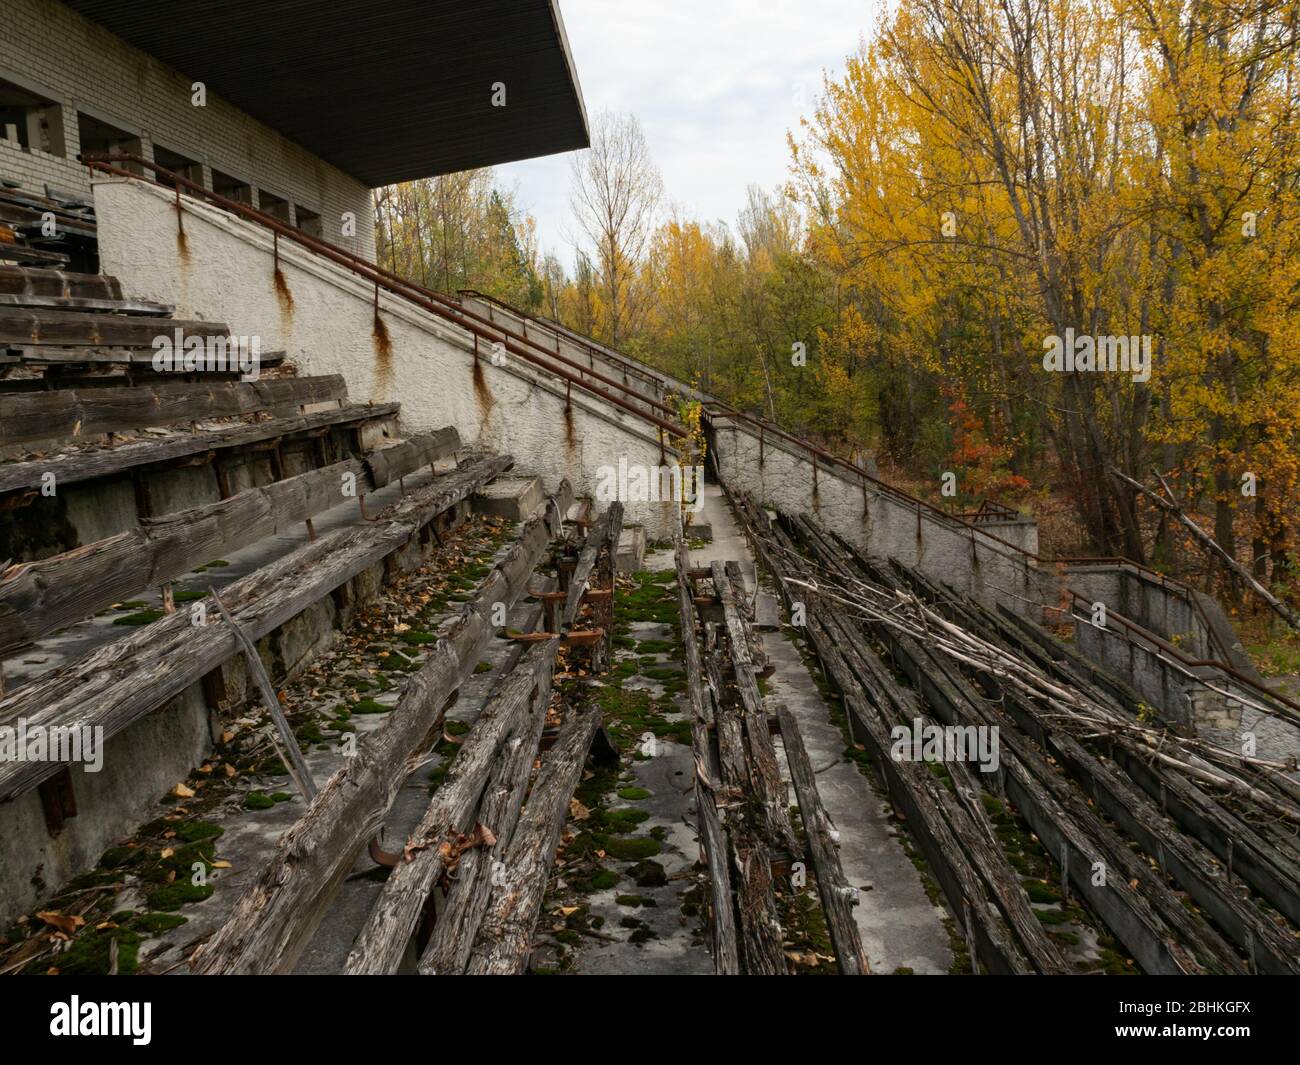 Abbandonata tribuna decadente dello stadio Avangard, presa dalla natura nella città fantasma Pripyat nella zona di esclusione di Chernobyl. Ucraina Foto Stock